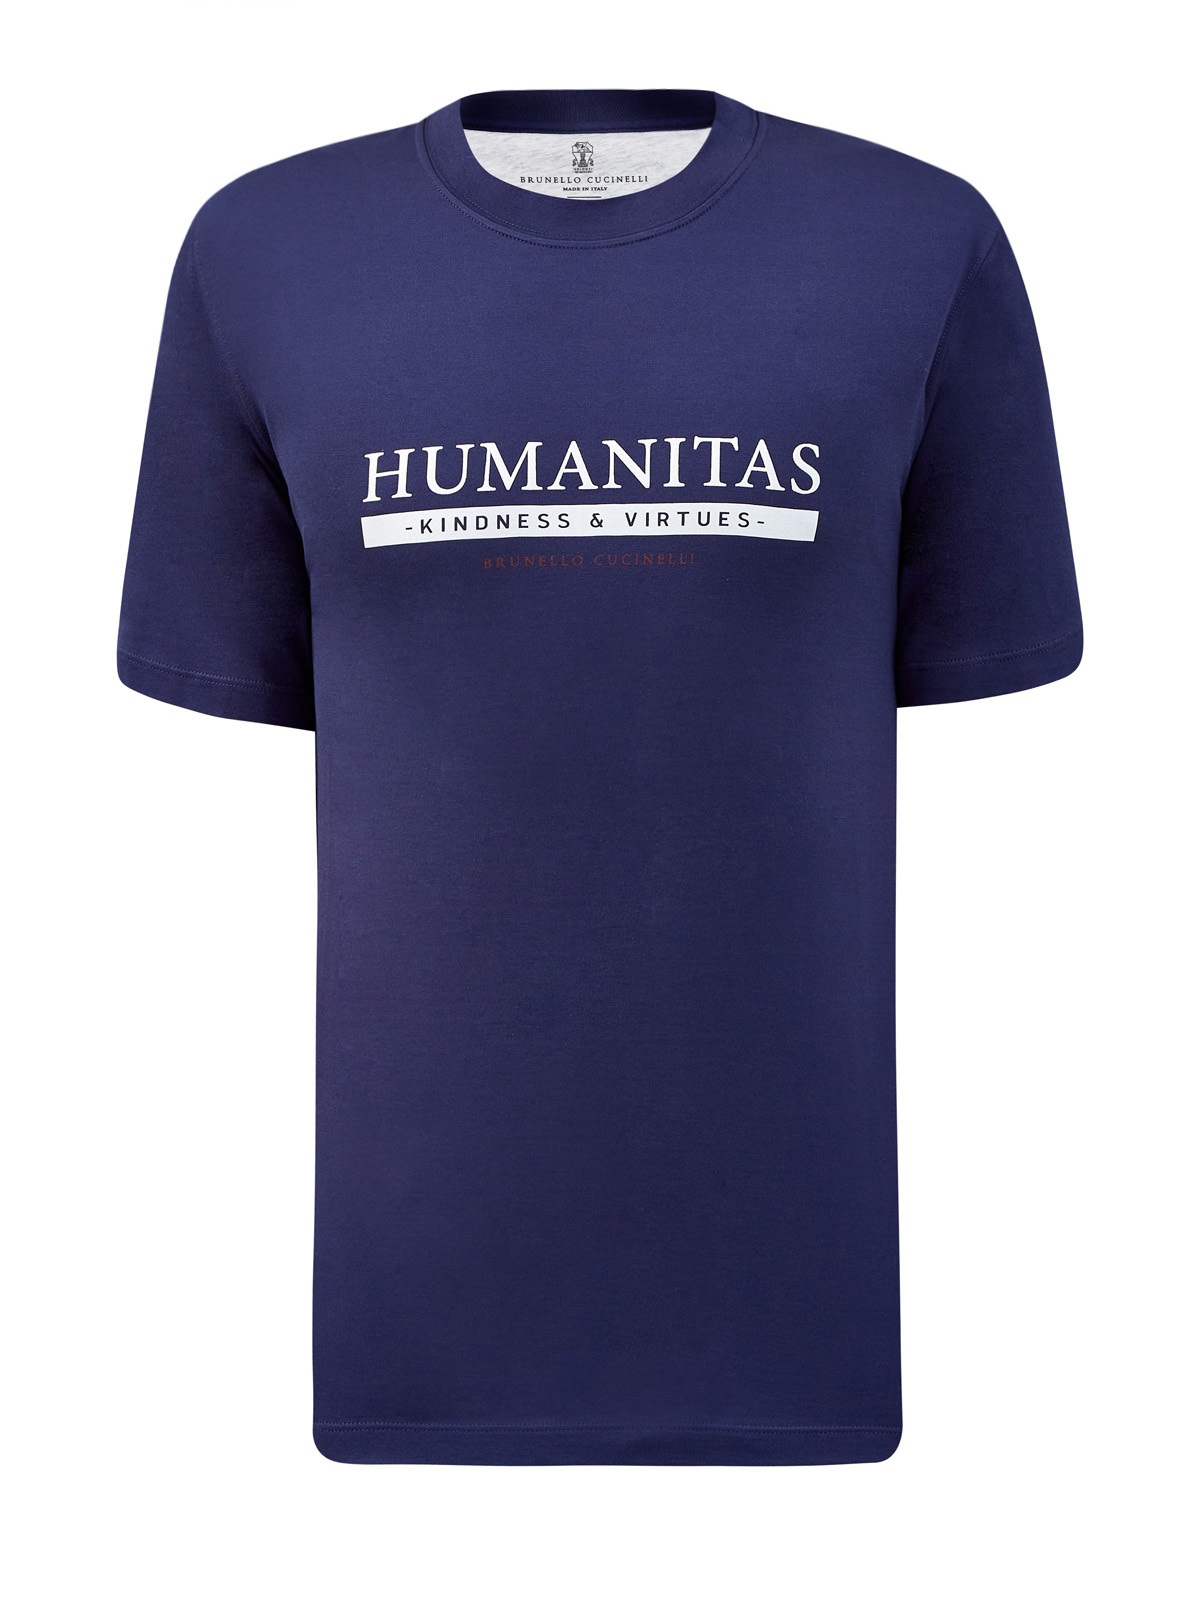 Хлопковая футболка с сезонным принтом Humanitas